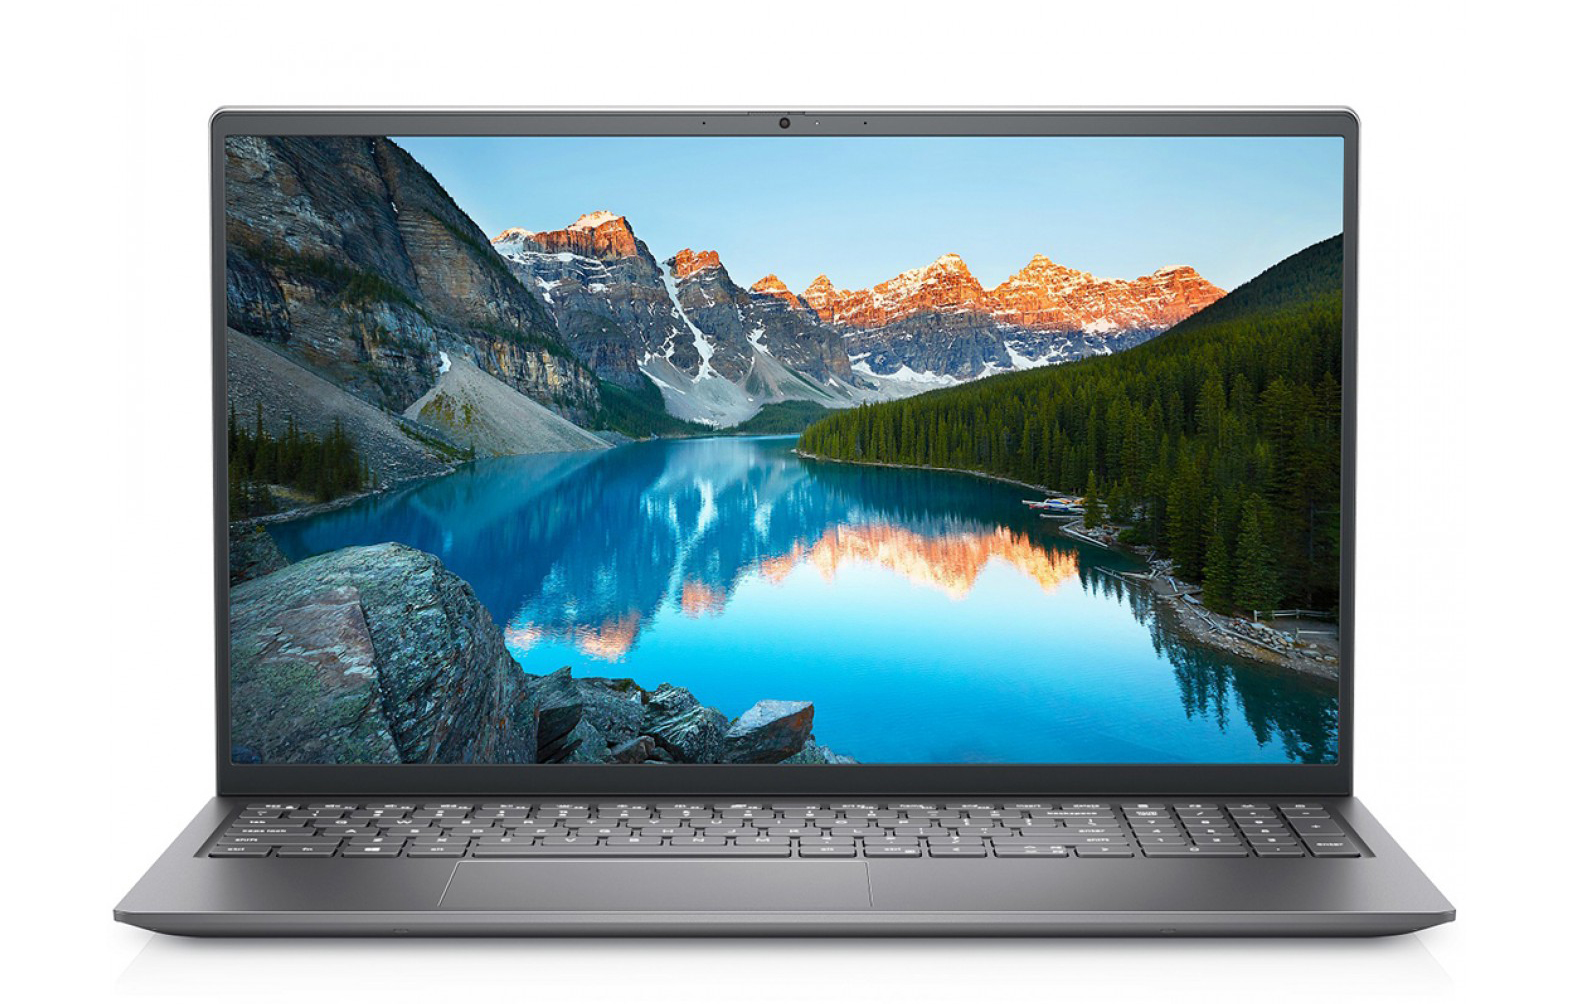 Giá laptop Dell Inspiron khuyến mãi hấp dẫn trong năm